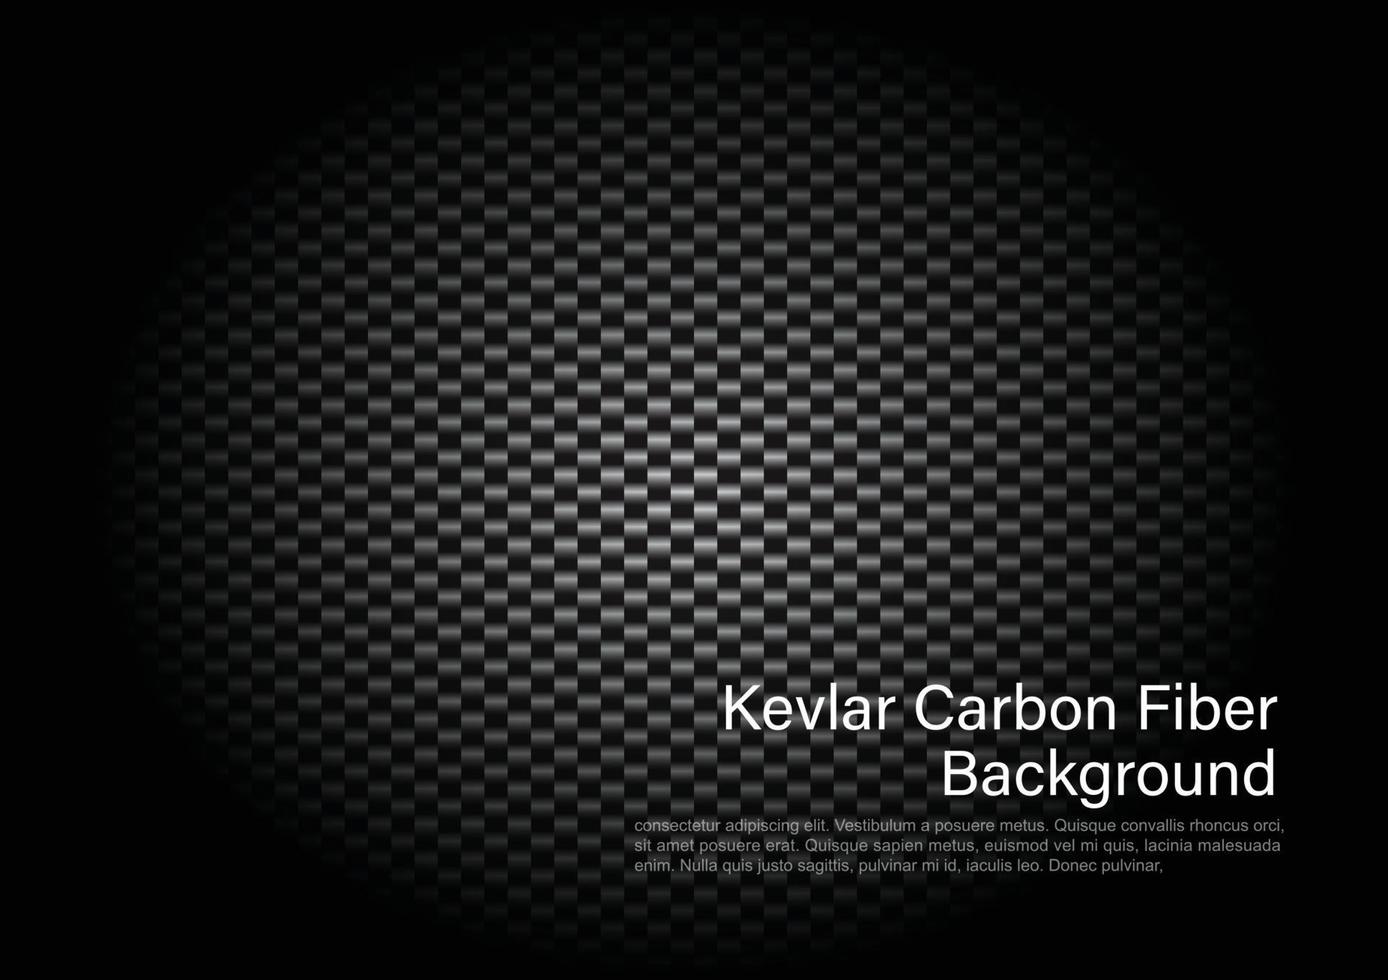 Kevlar Carbon Fiber Background. Vector illustrator